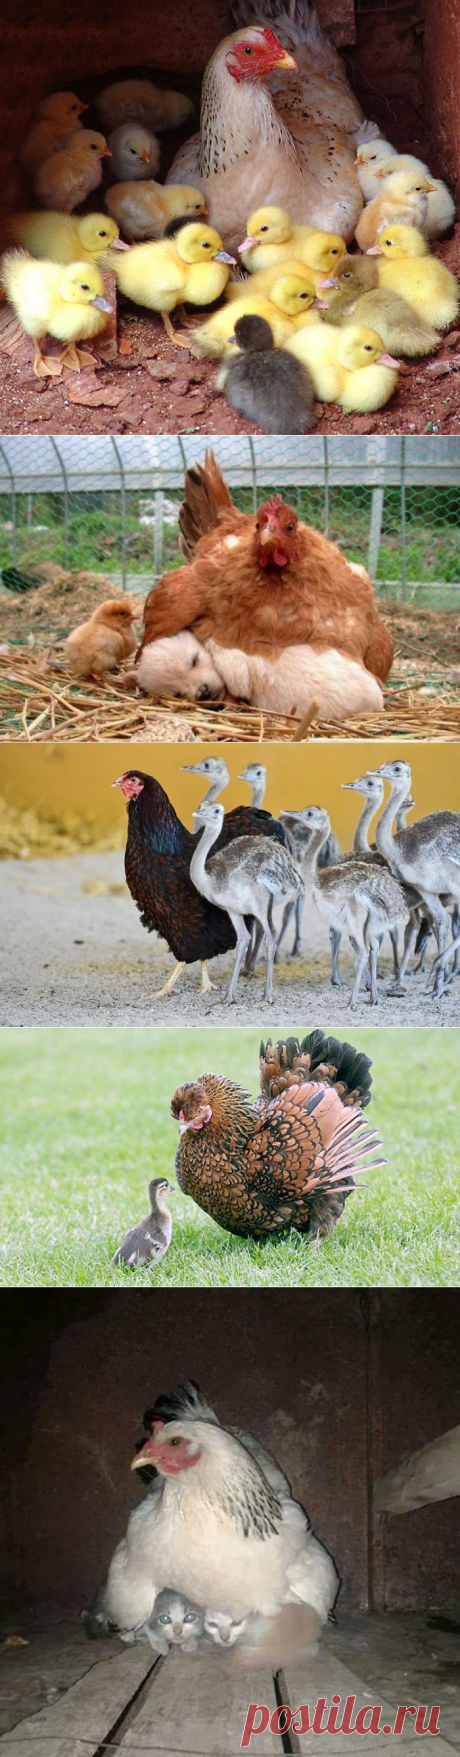 Фотографии, которые доказывают, что курочки — лучшие мамы среди животных